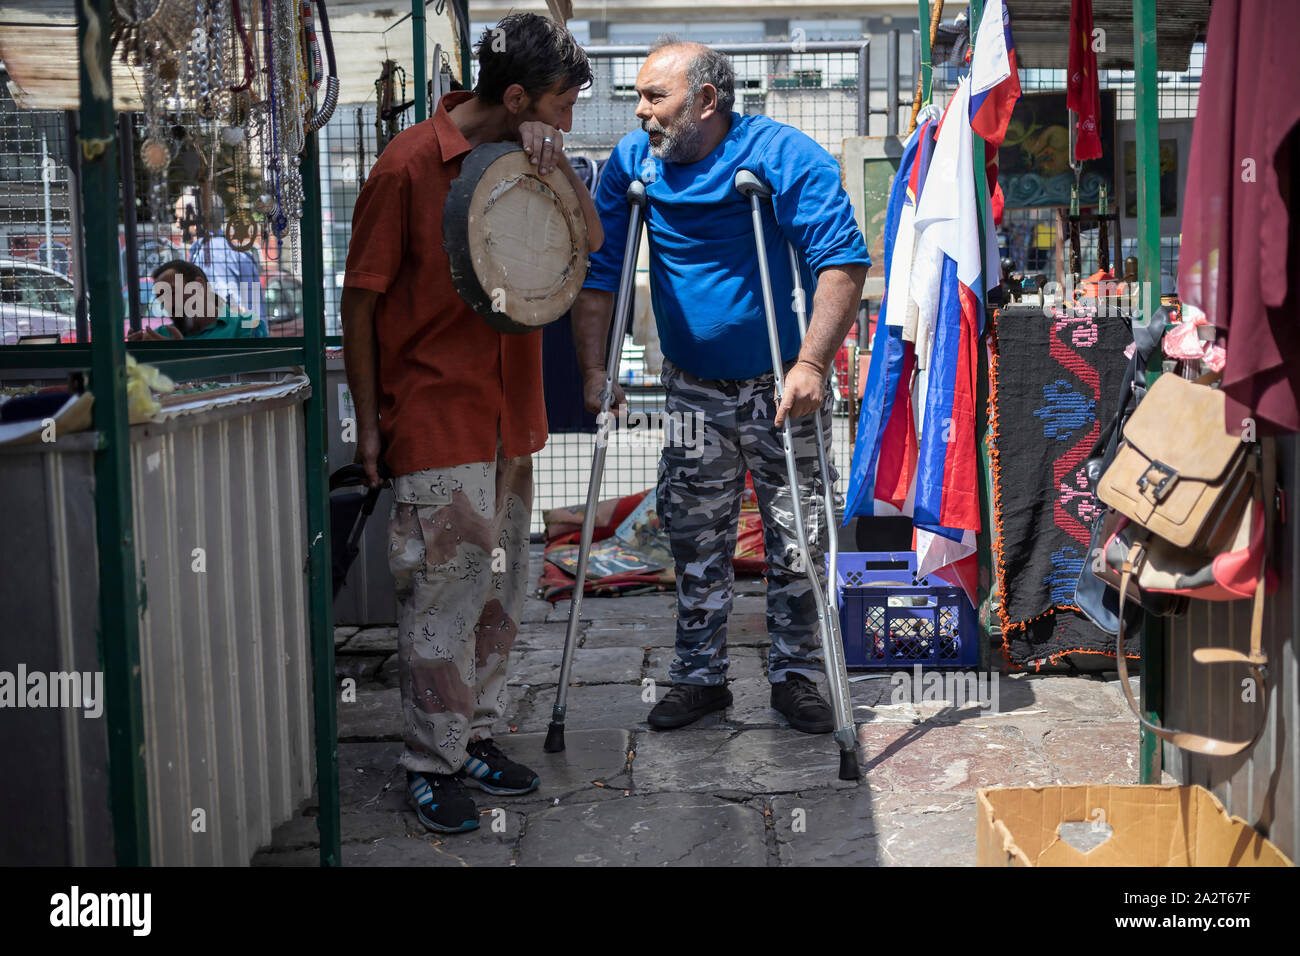 Belgrade, Serbie, May 15, 2019 : deux hommes debout gitane et avoir une conversation à un marché aux puces de Kalenić Marché vert Banque D'Images